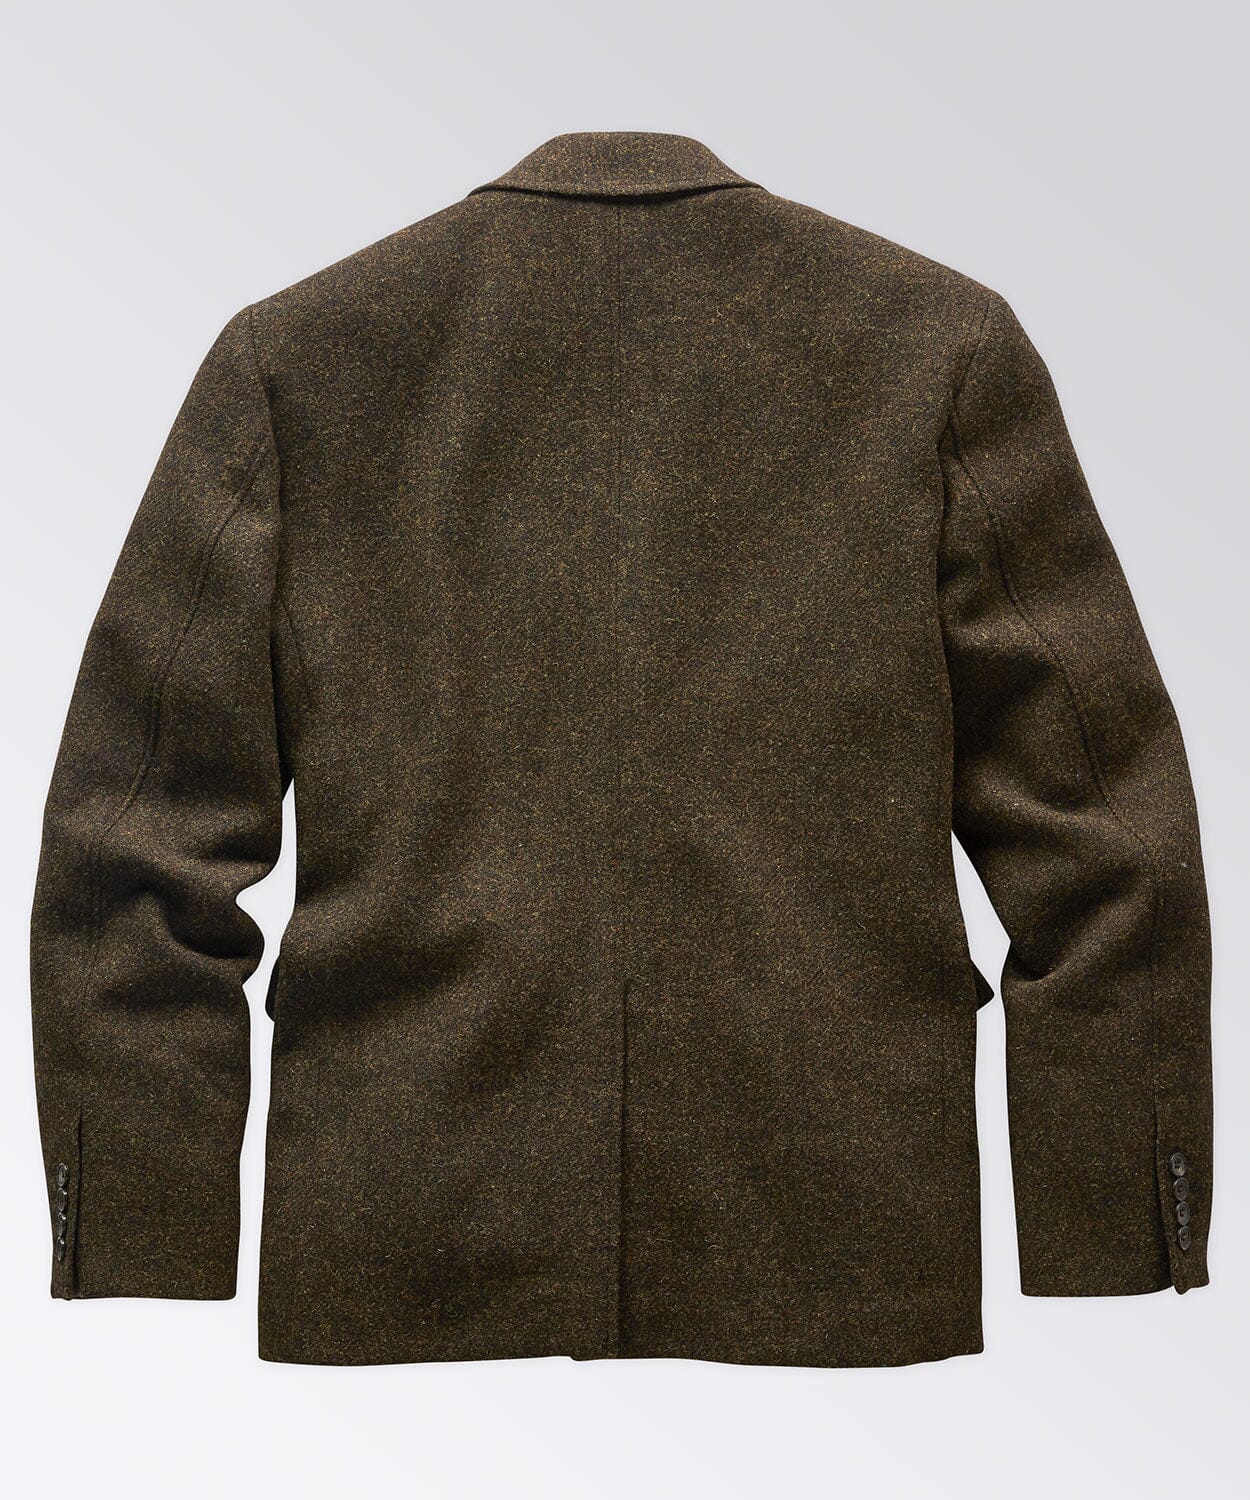 Peak Lapel Tweed Blazer Sport Coats & Blazers OOBE BRAND 